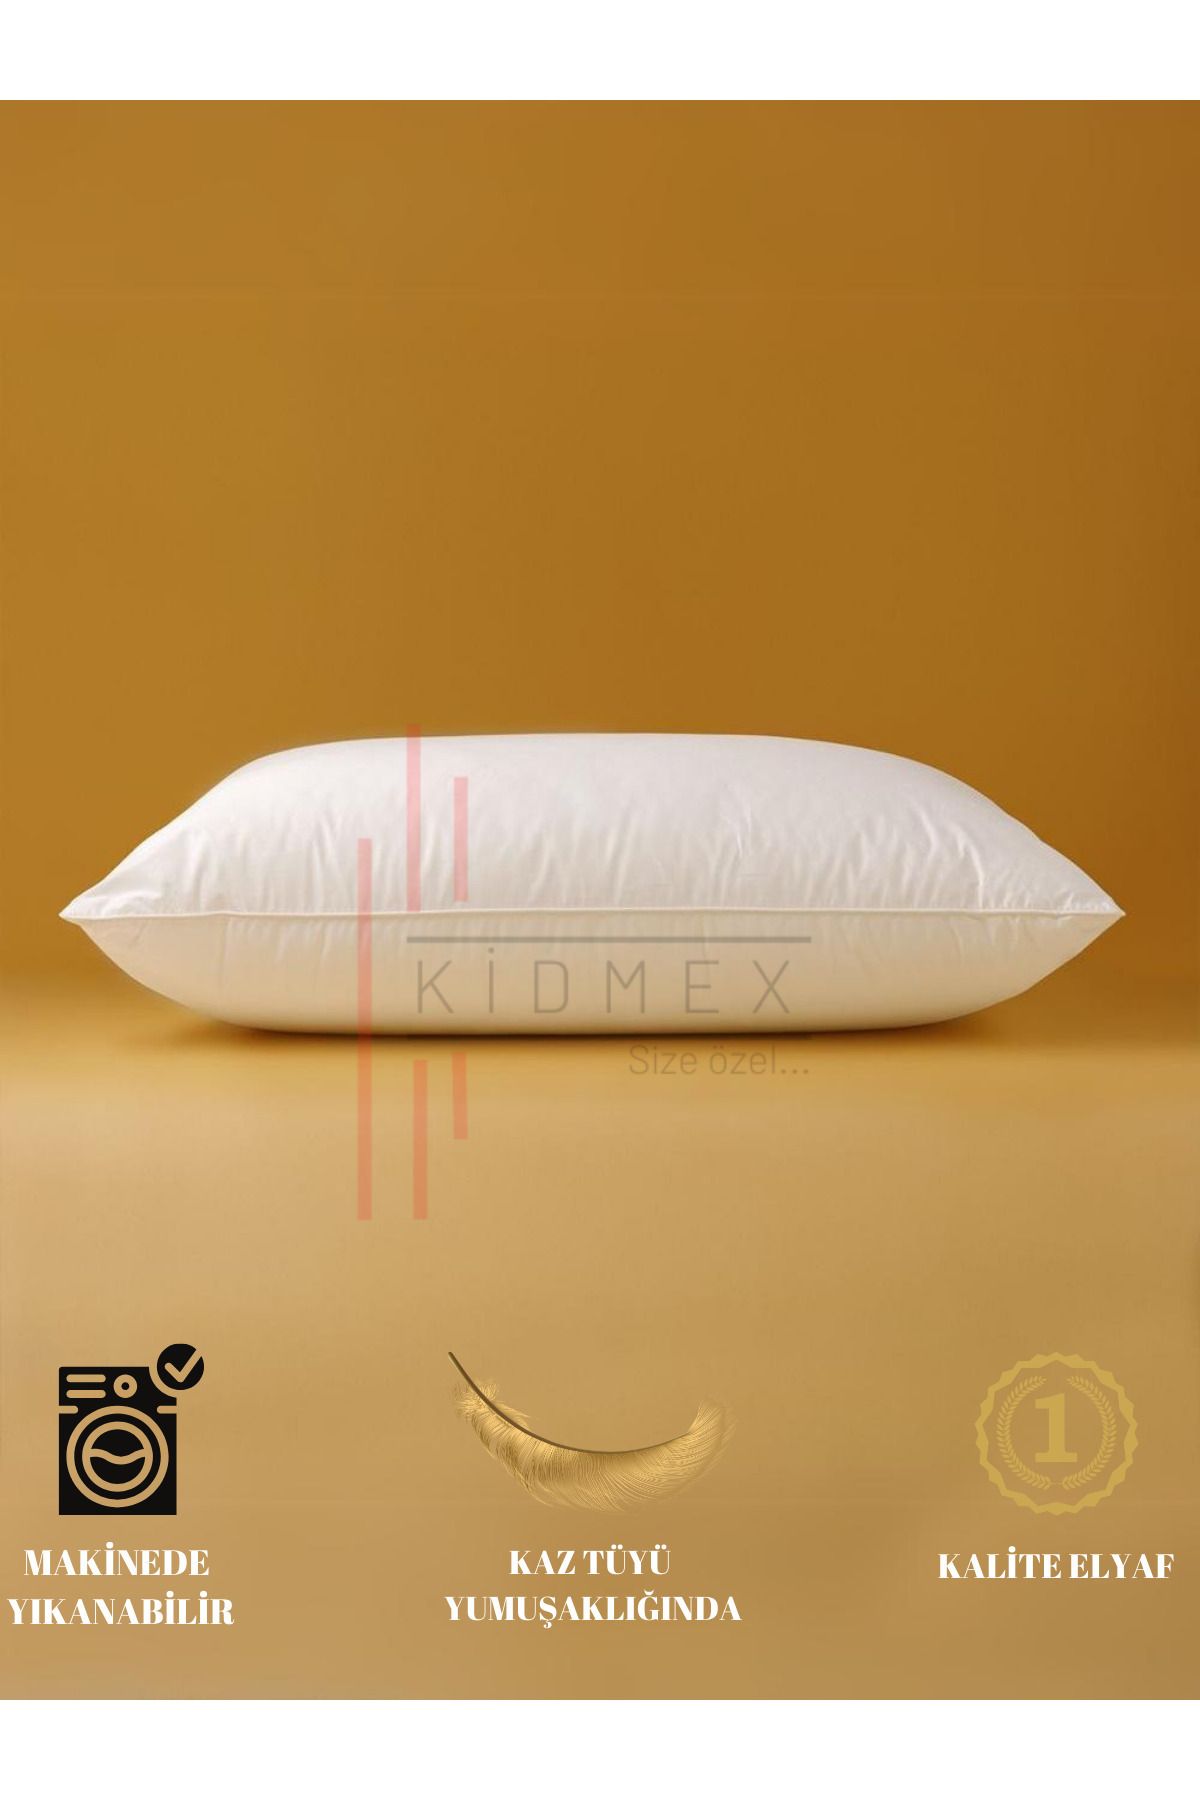 Kidmex Rulo Pack Premium Yıkanabilir Yastık (1 ADET 600GR)